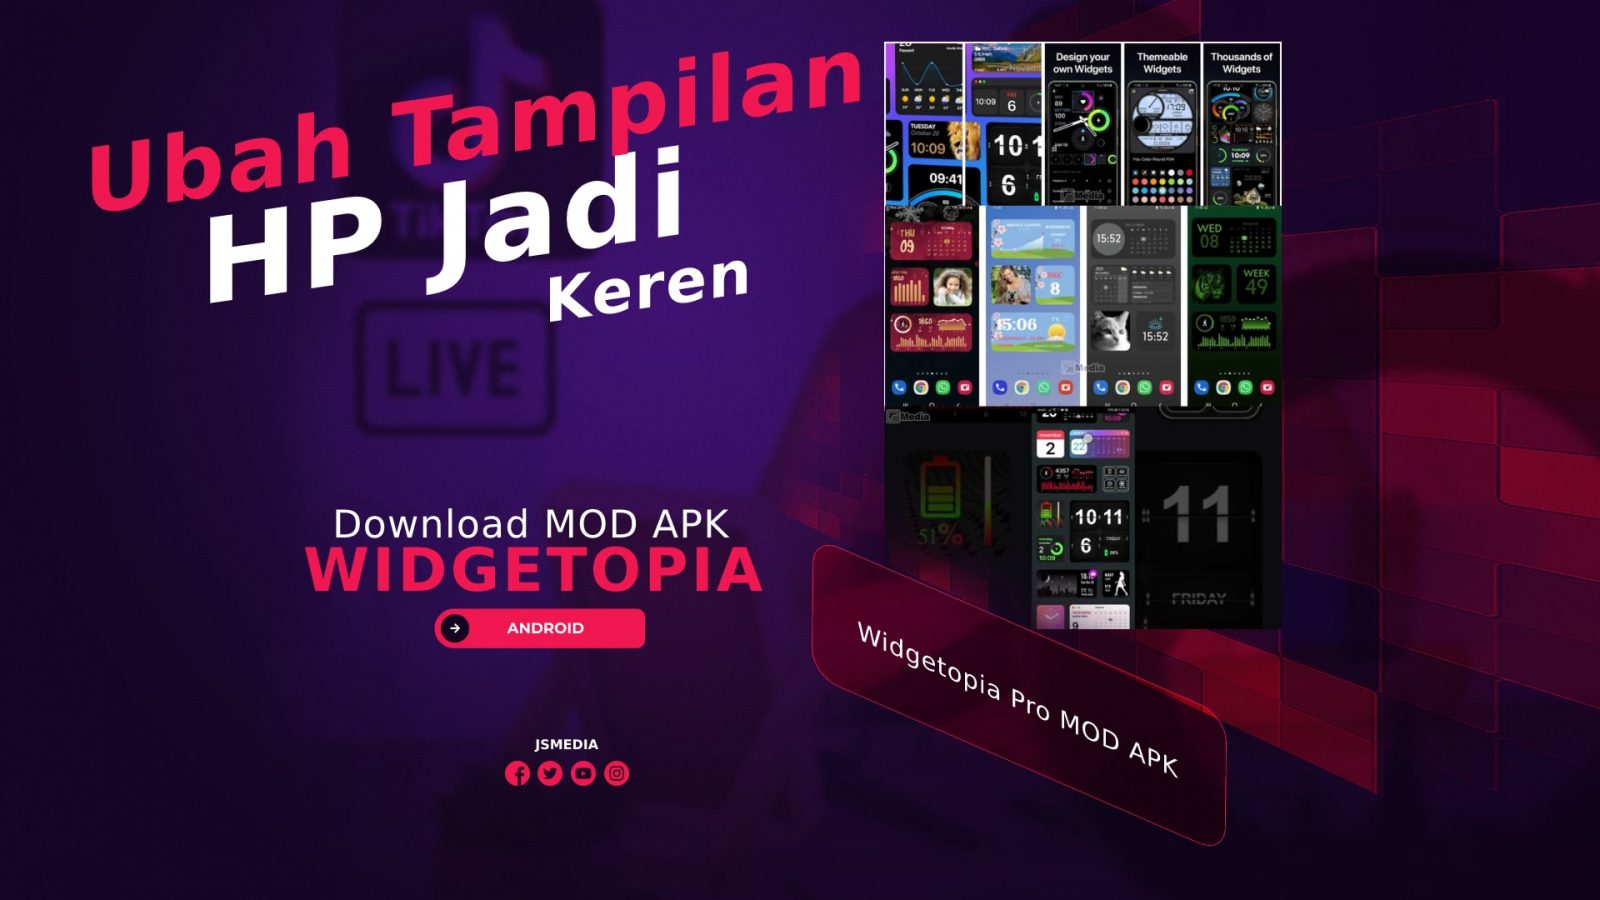 Download Widgetopia Pro MOD APK, Ubah Tampilan HP Jadi Keren